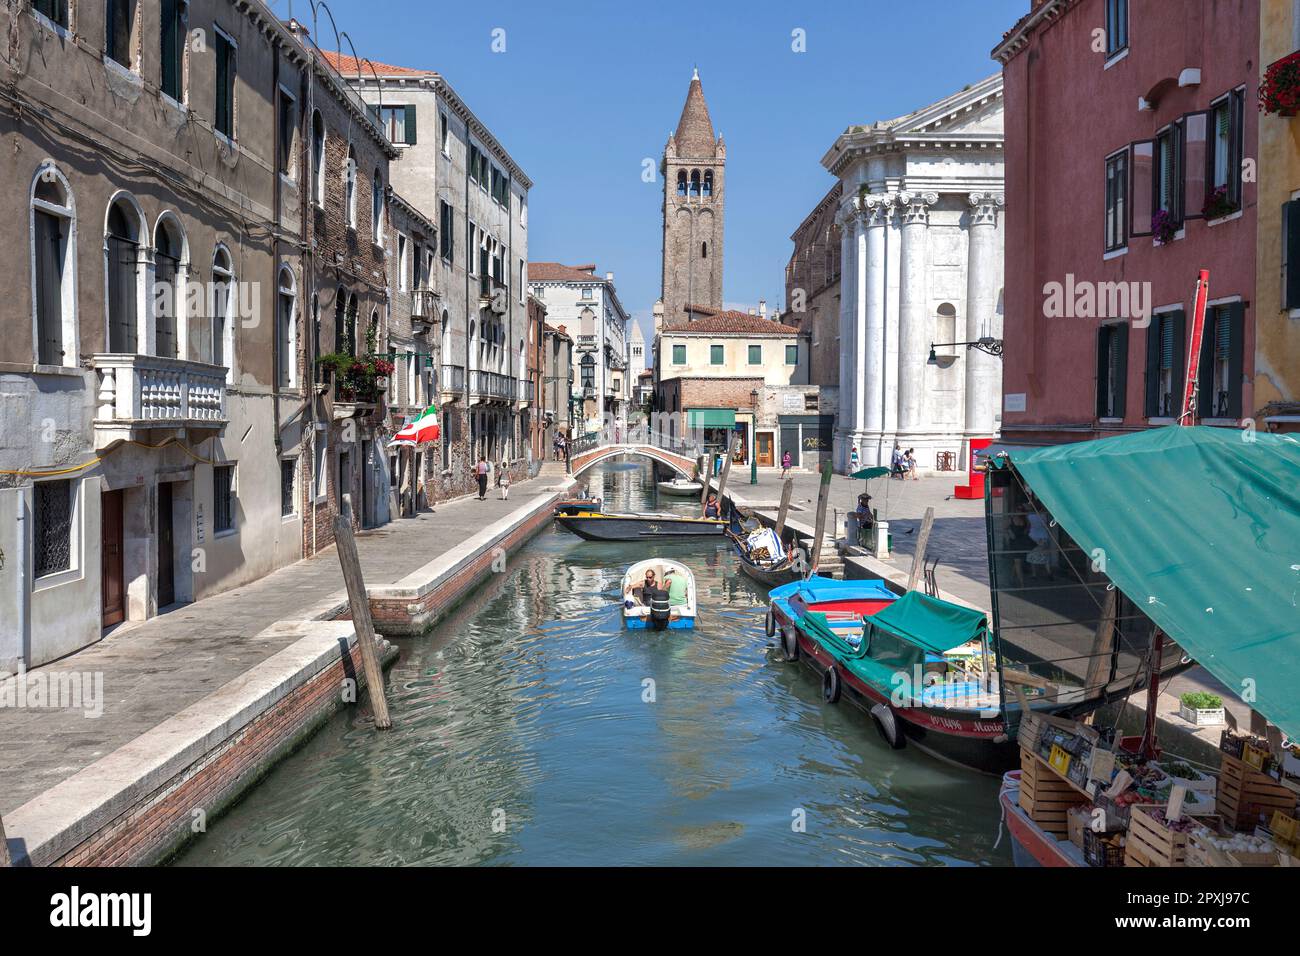 Bateaux sur le canal Rio de San Barnaba avec Fondamenta Alberti (à gauche) et pont San Barnabas avec l'église St Barnabas clocher, Dorsoduro, Venise Banque D'Images